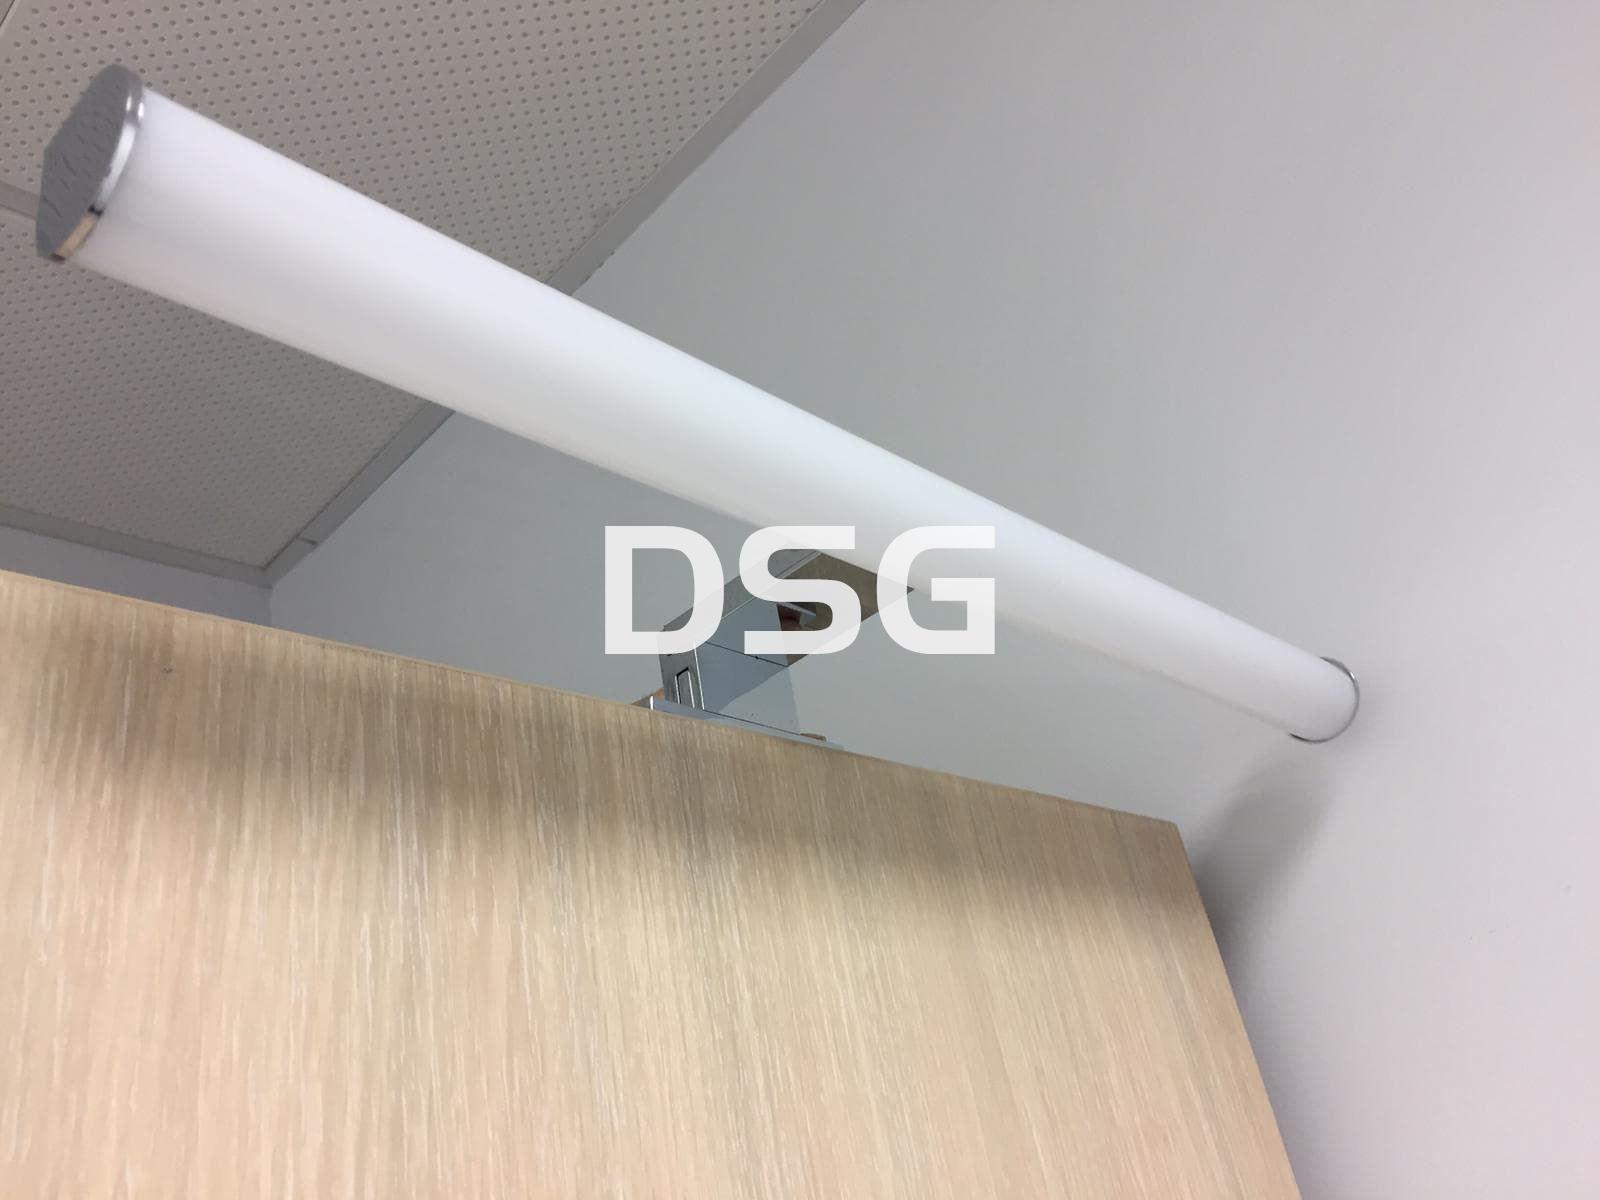 Aplique DSG9 60cm - Imagen 1